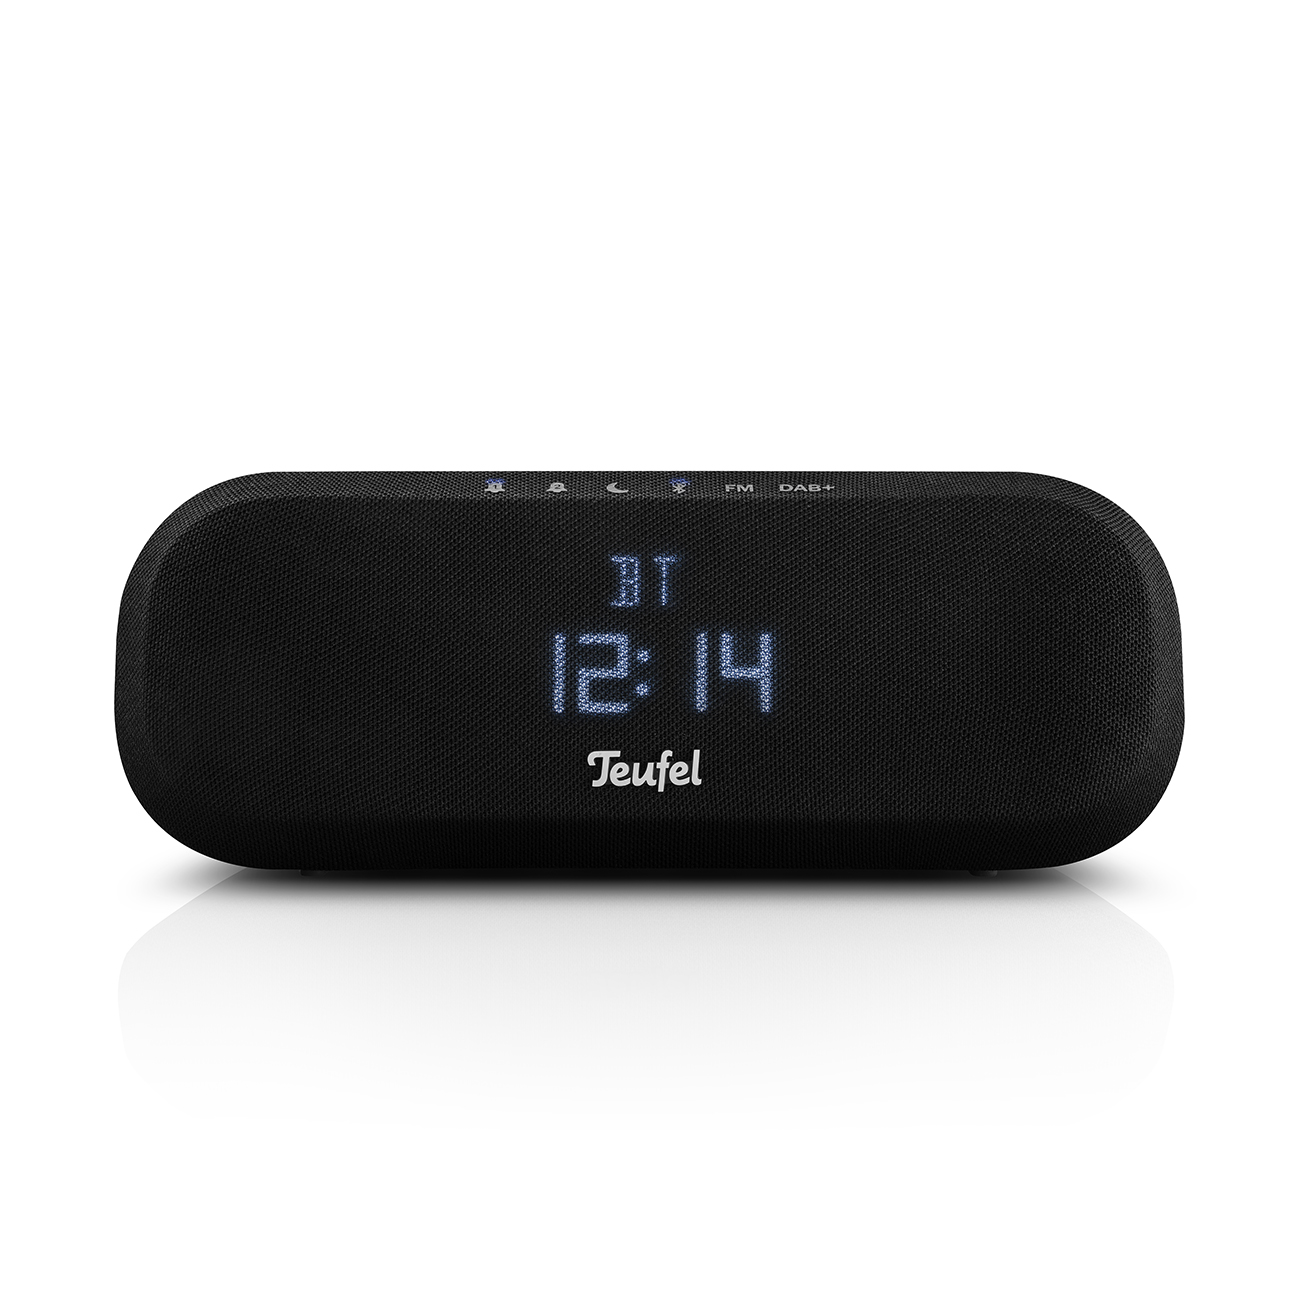 TEUFEL RADIO ONE Radio, Black Bluetooth, DAB+, FM